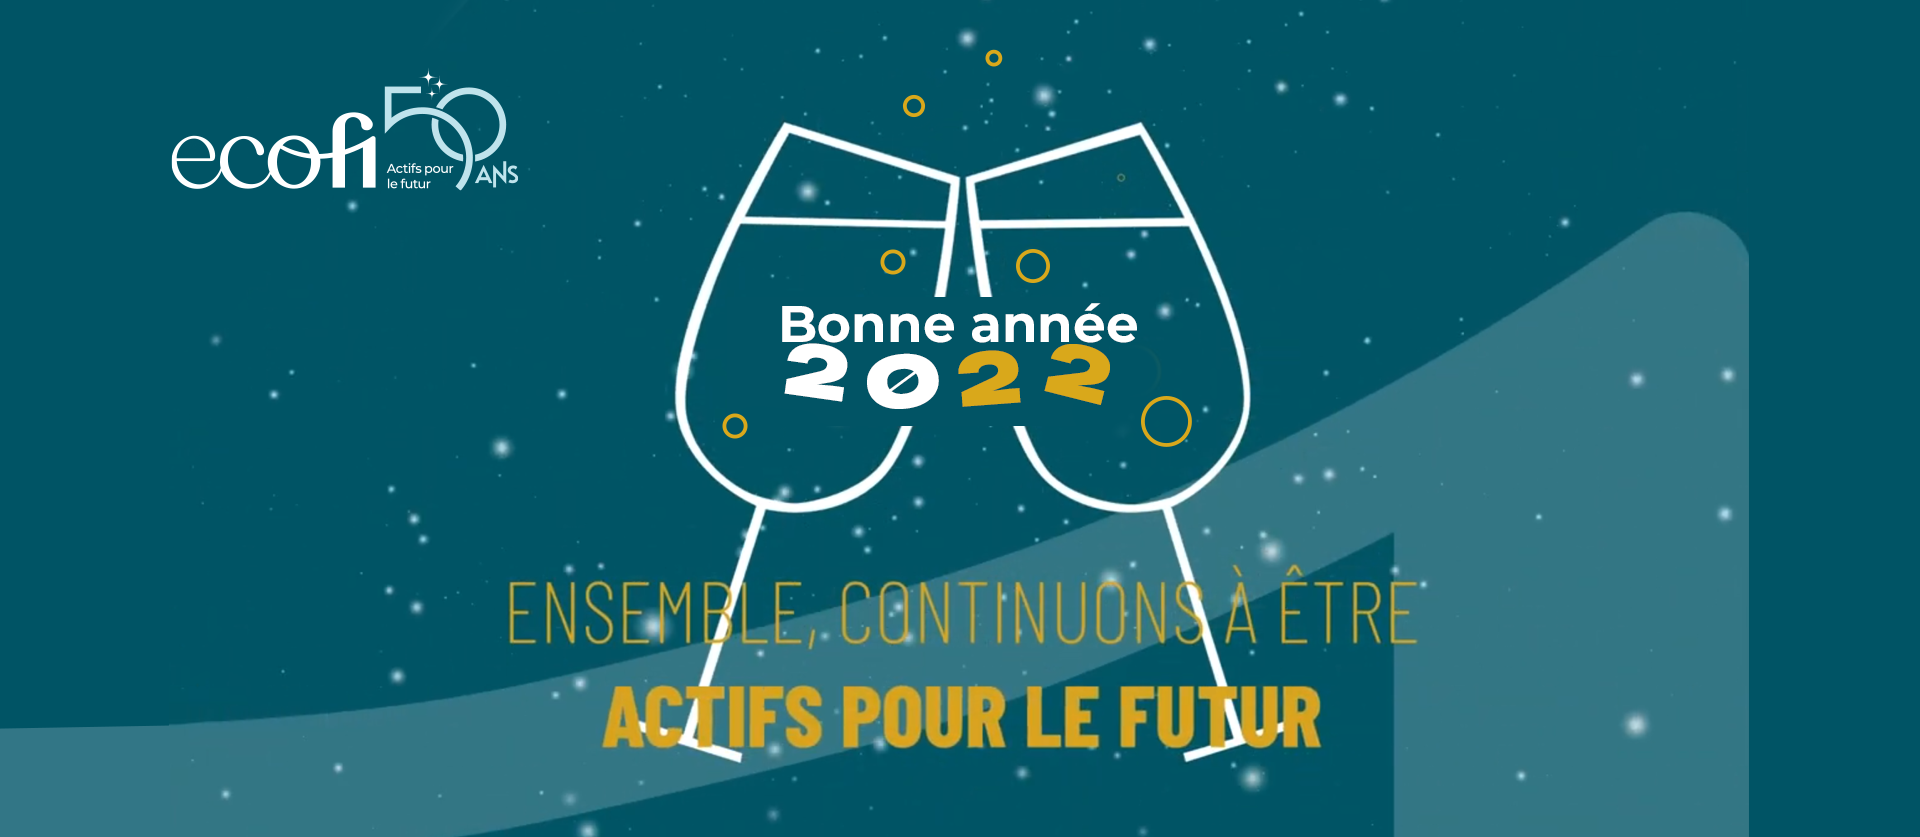 Ecofi vous souhaite une belle année 2022